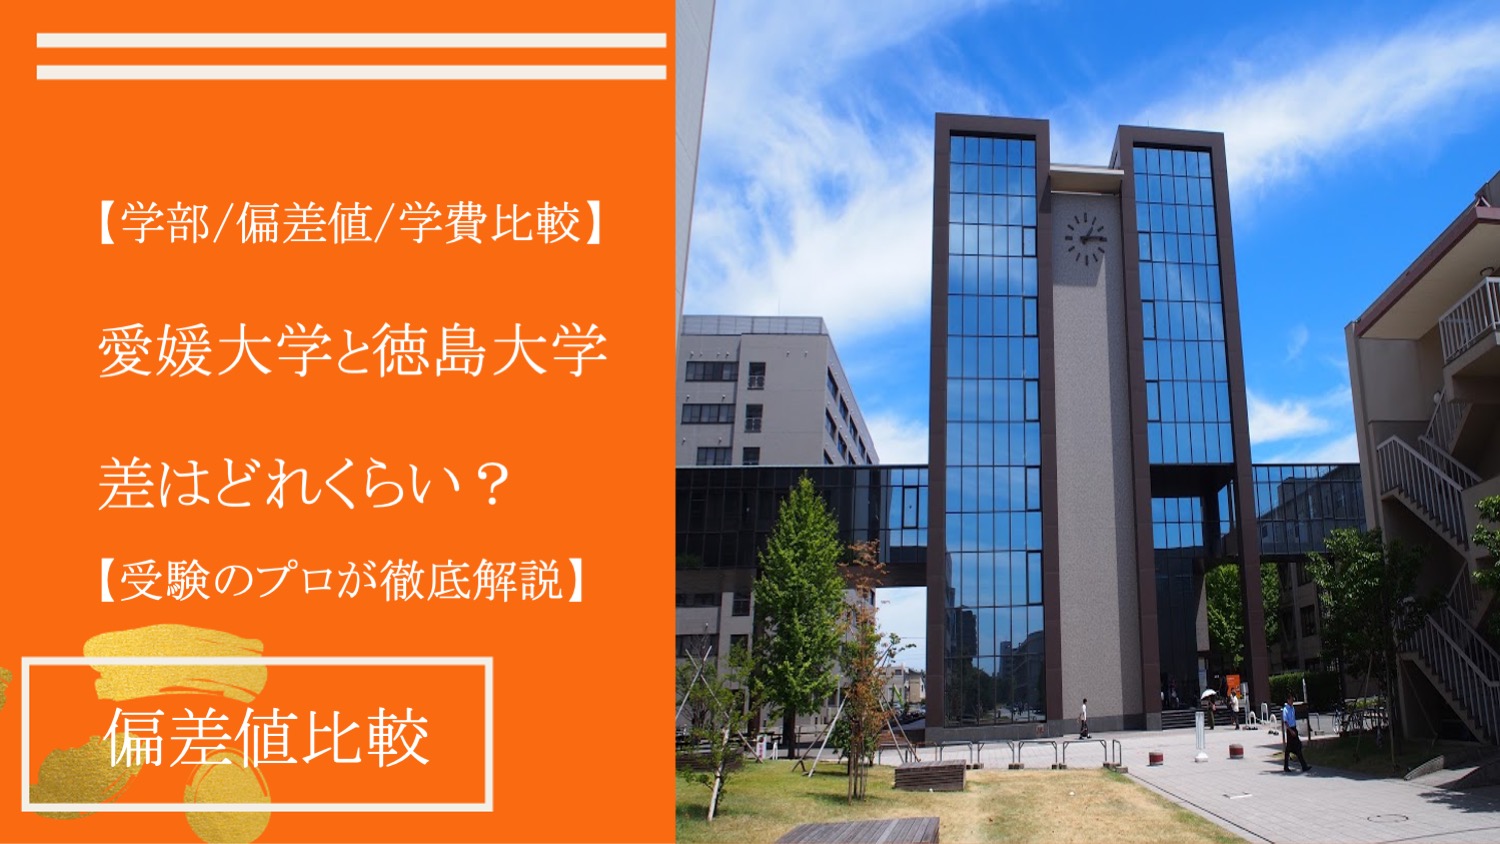 【学部/偏差値/学費】愛媛大学と徳島大学を受験のプロが比較